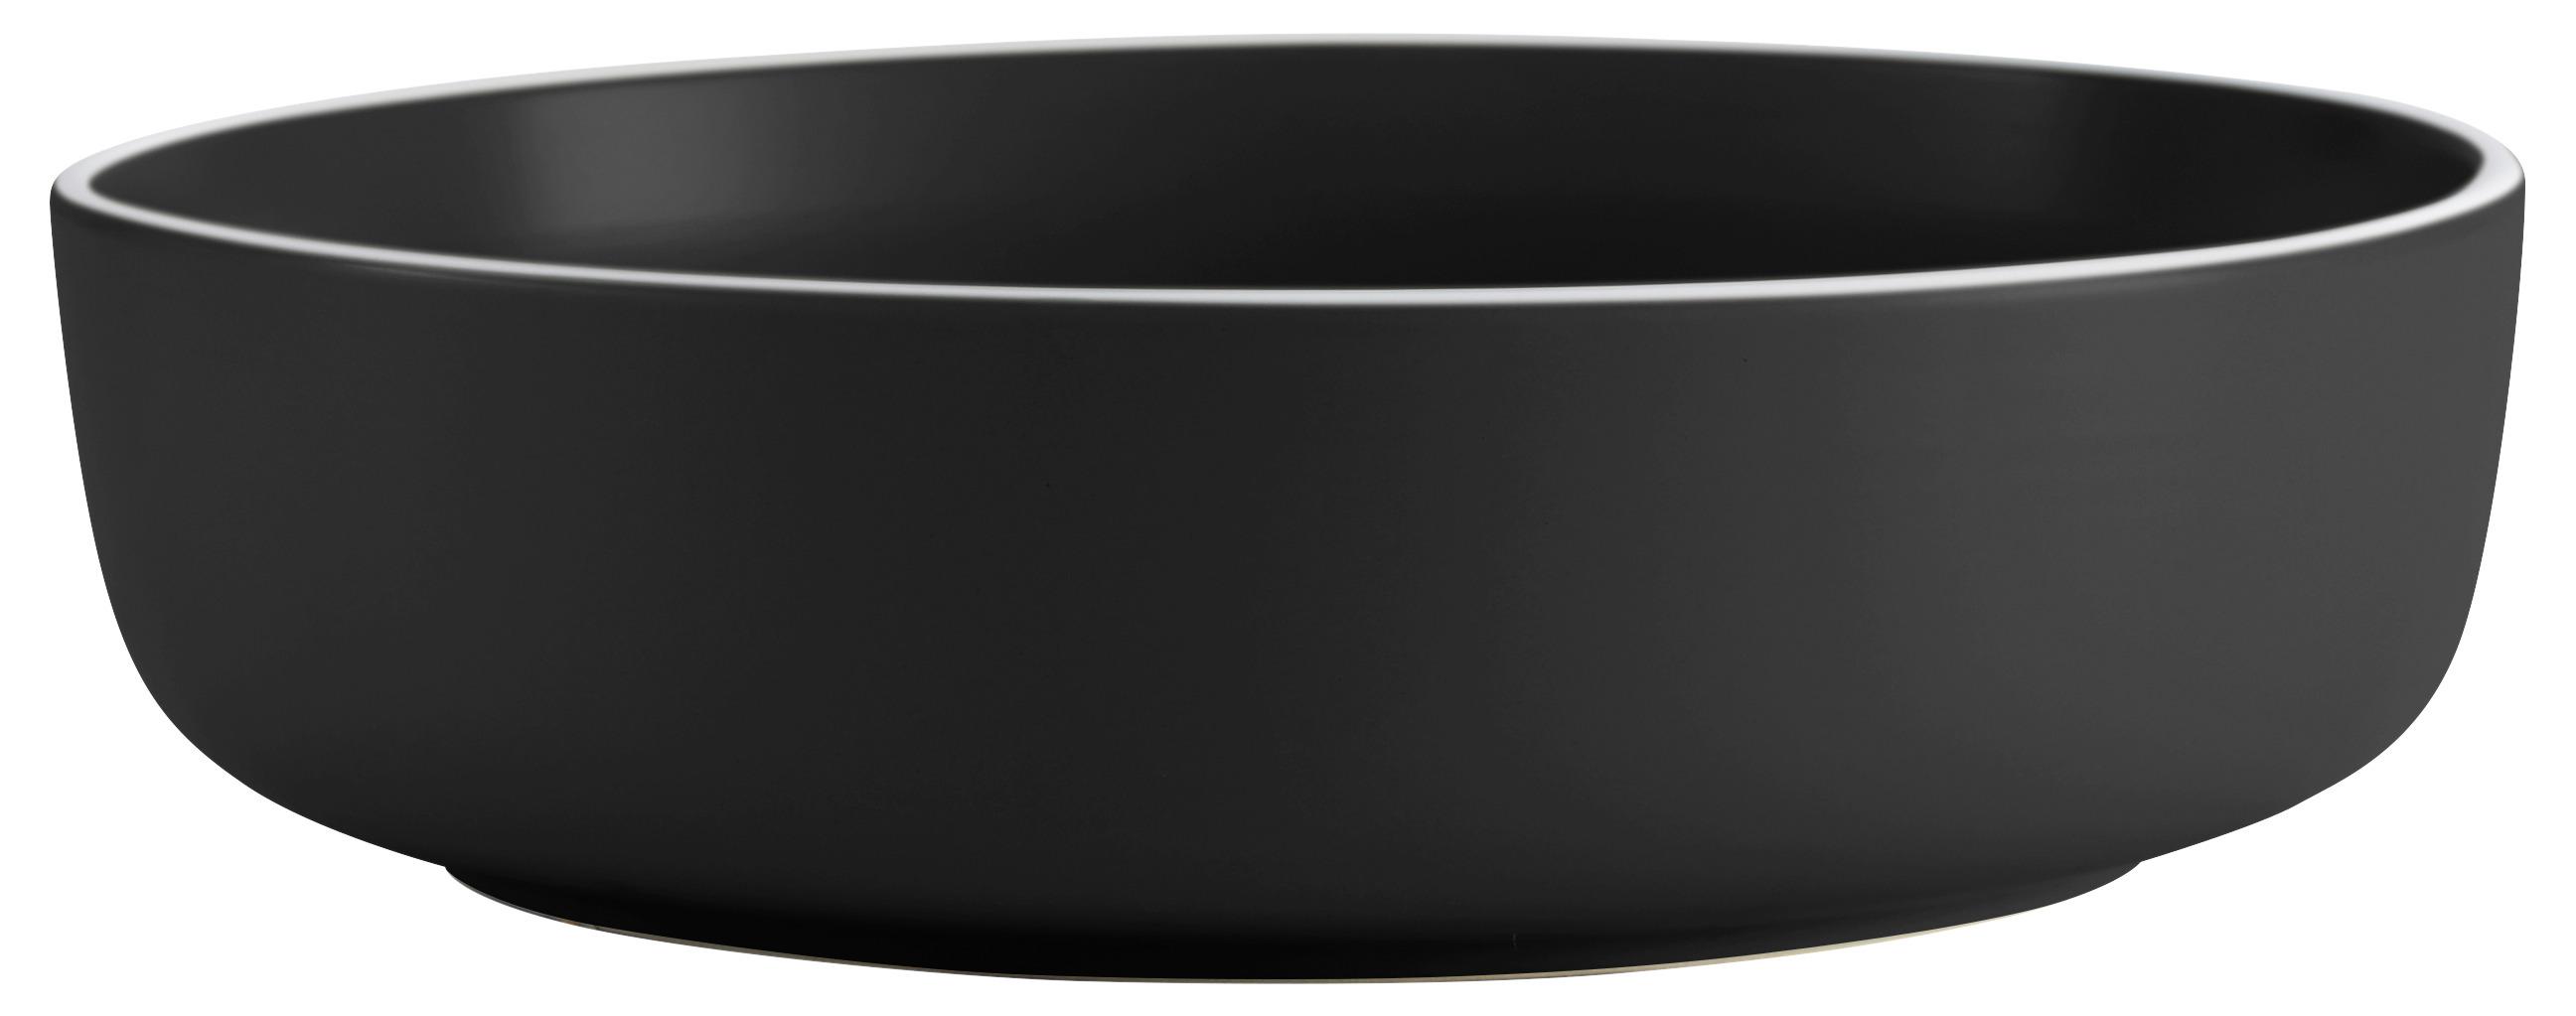 Salátová Mísa Ragnar, Ø: 26cm - černá, Moderní, keramika (26cm) - Modern Living